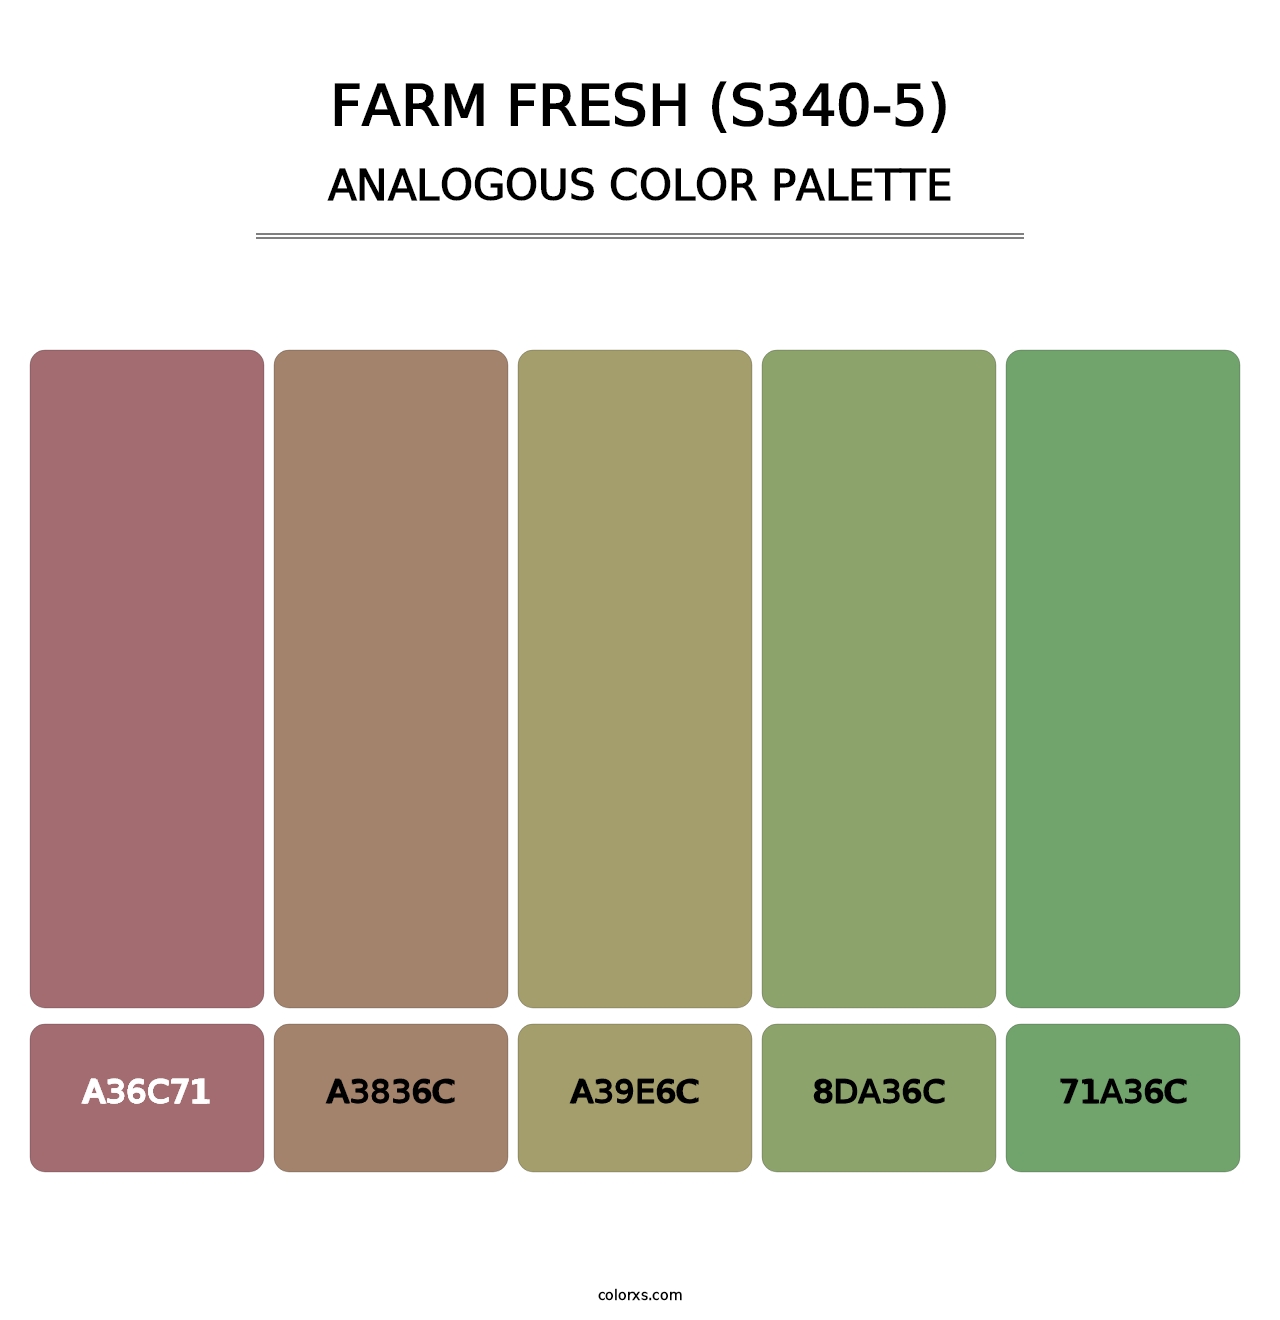 Farm Fresh (S340-5) - Analogous Color Palette